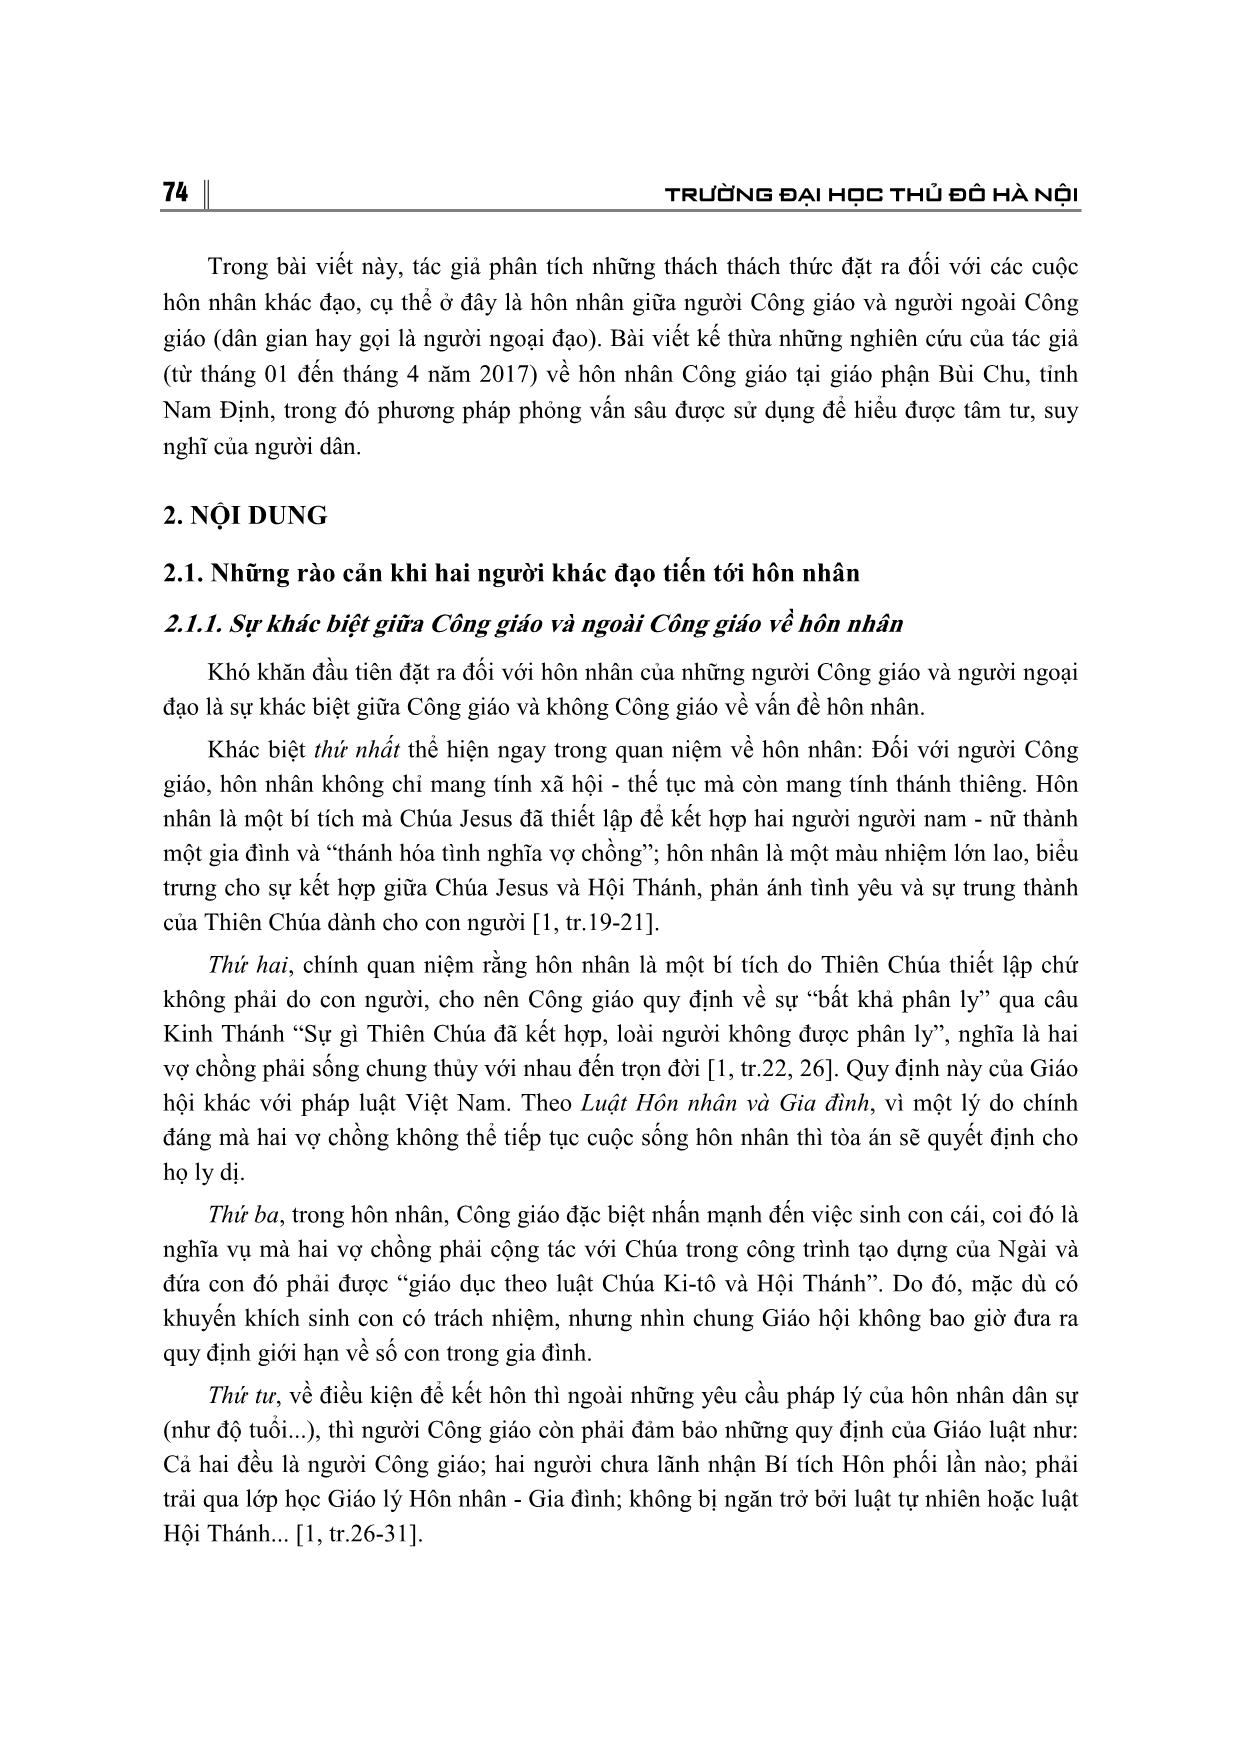 Những thách thức đối với cuộc hôn nhân khác tôn giáo ở Việt Nam hiện nay trang 2